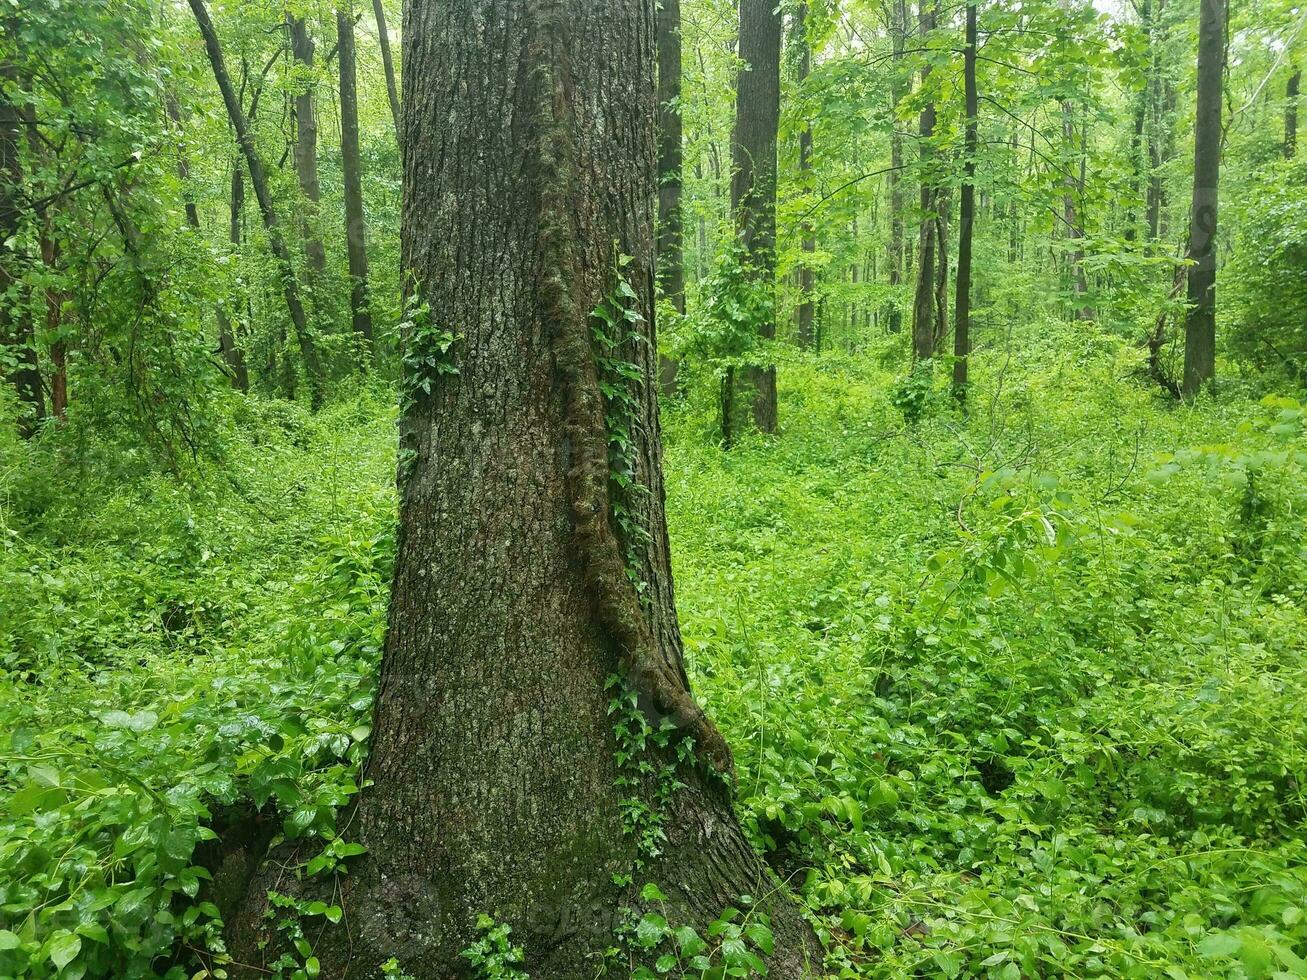 stora giftiga murgröna vinstockar på ett träd i skogen foto